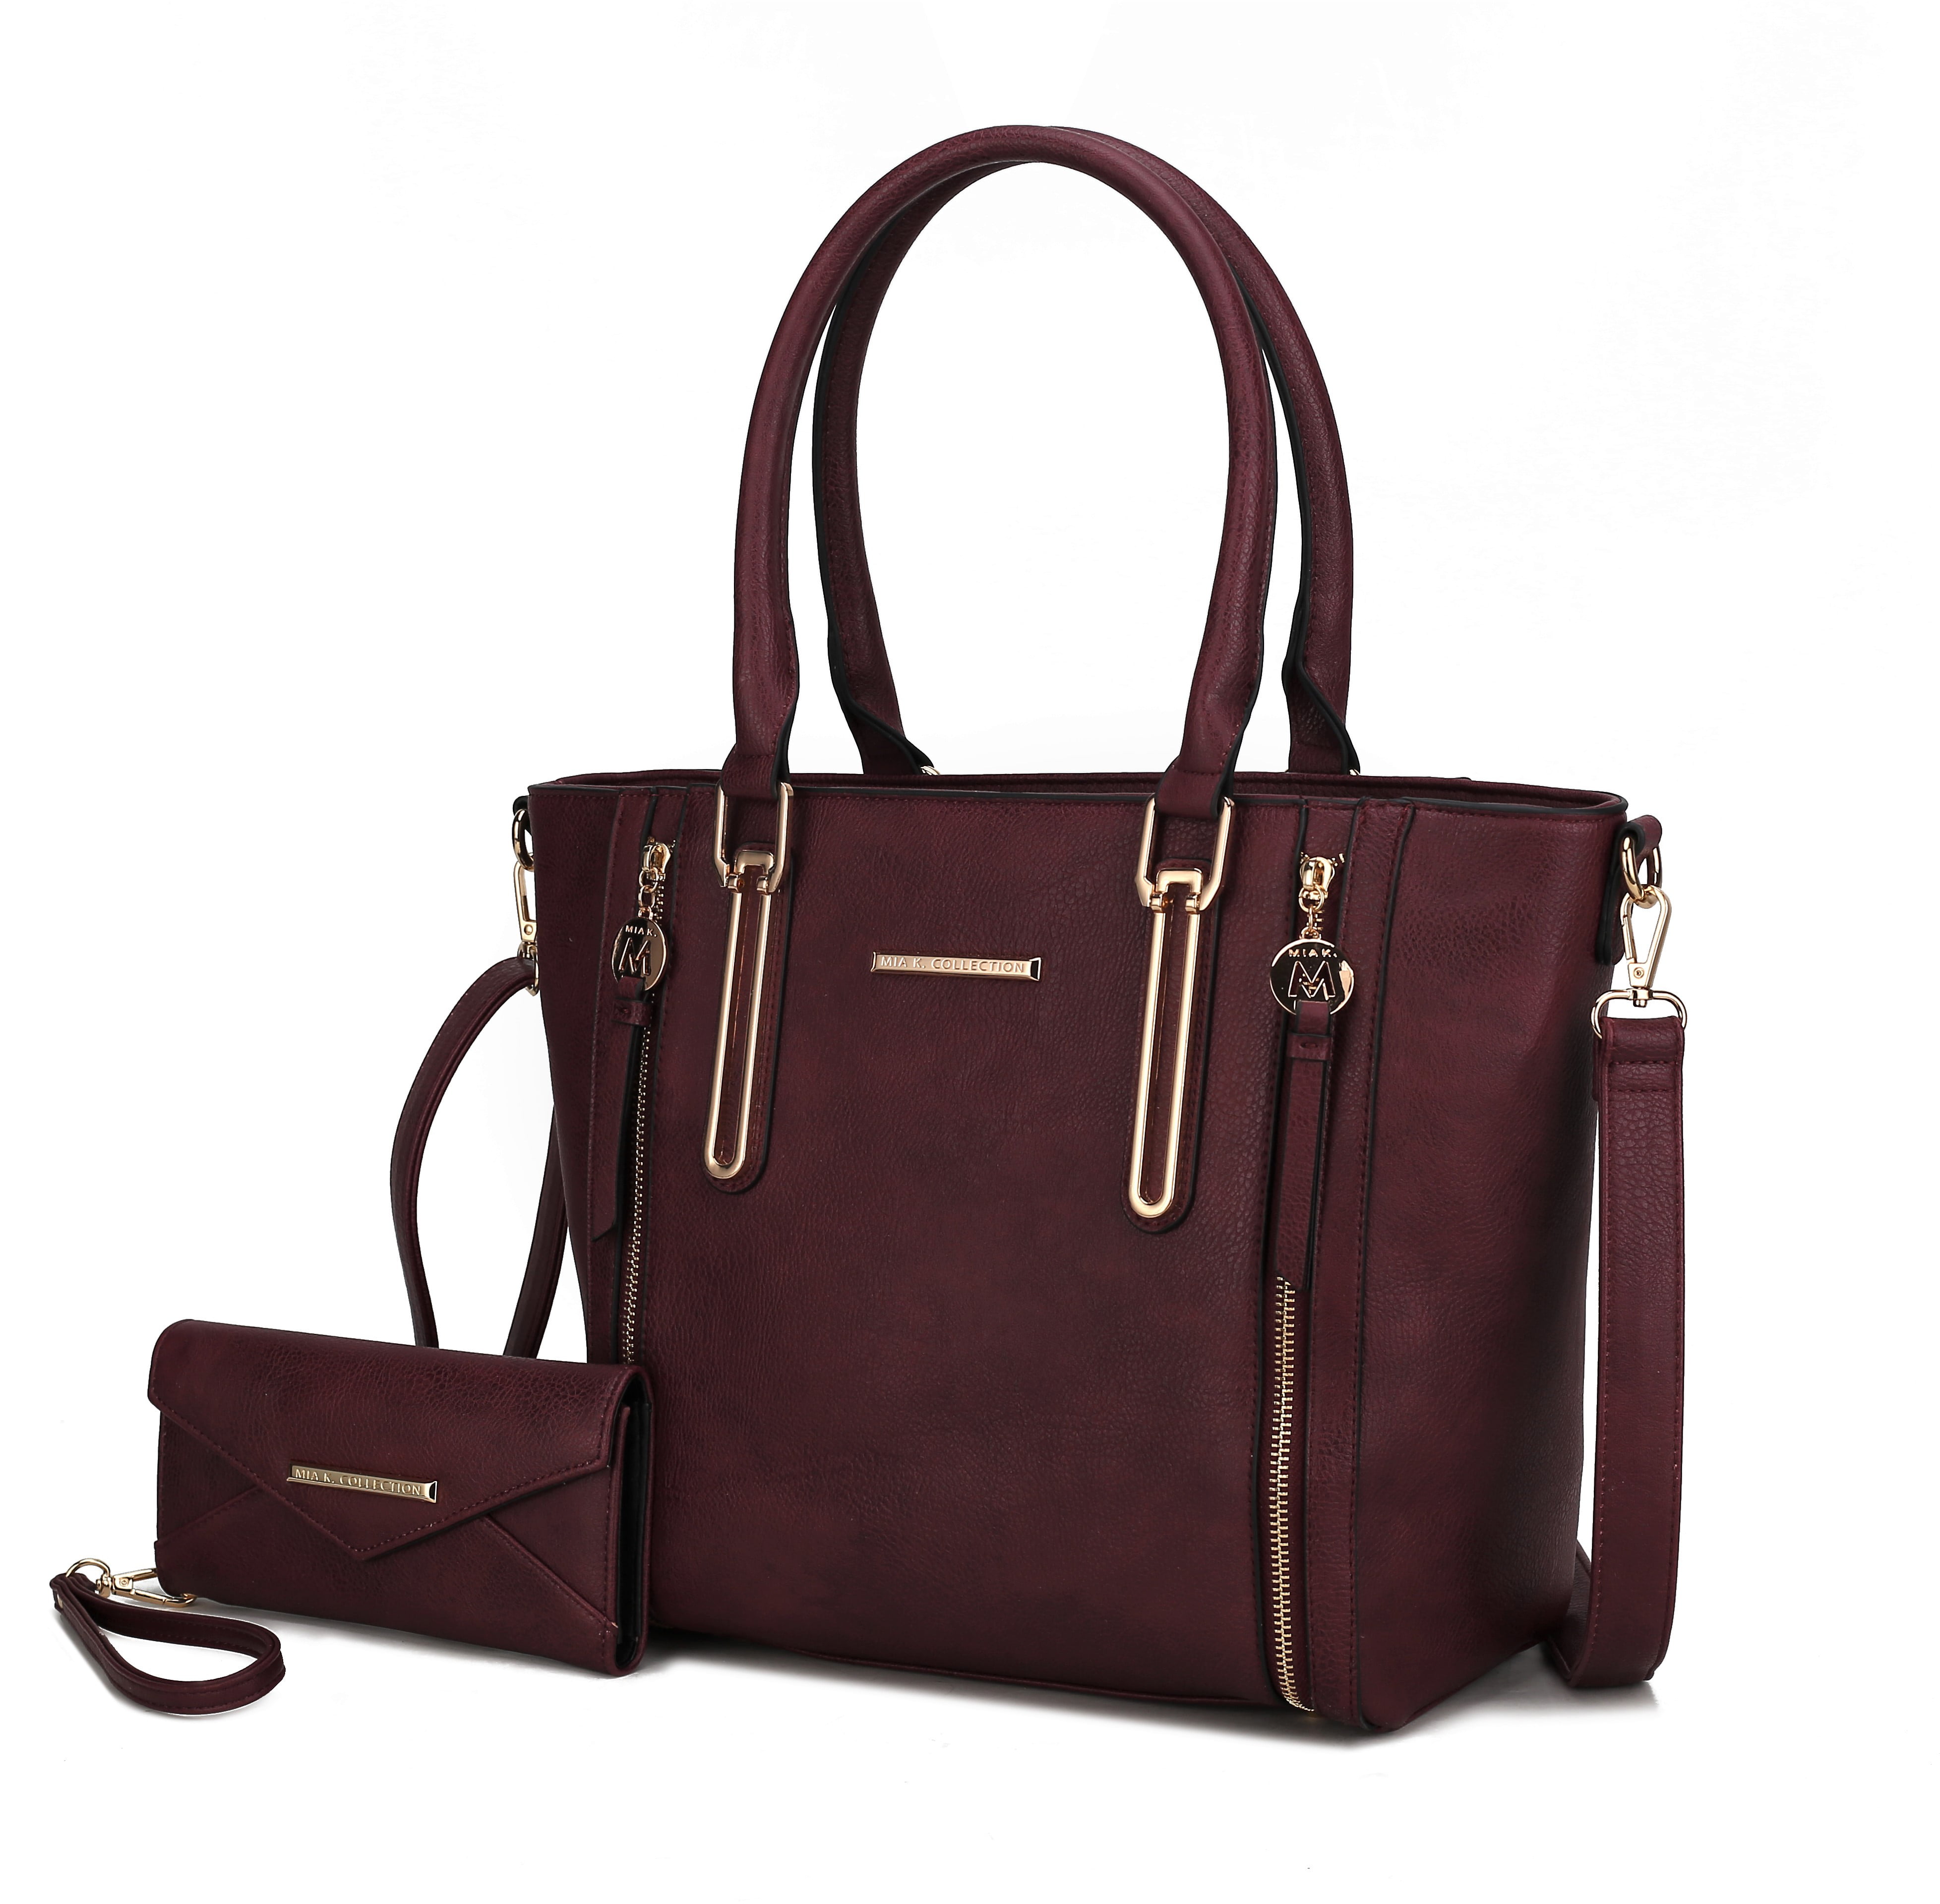 Vegan Leather Bags  Women's Handbags, Bag Straps & More